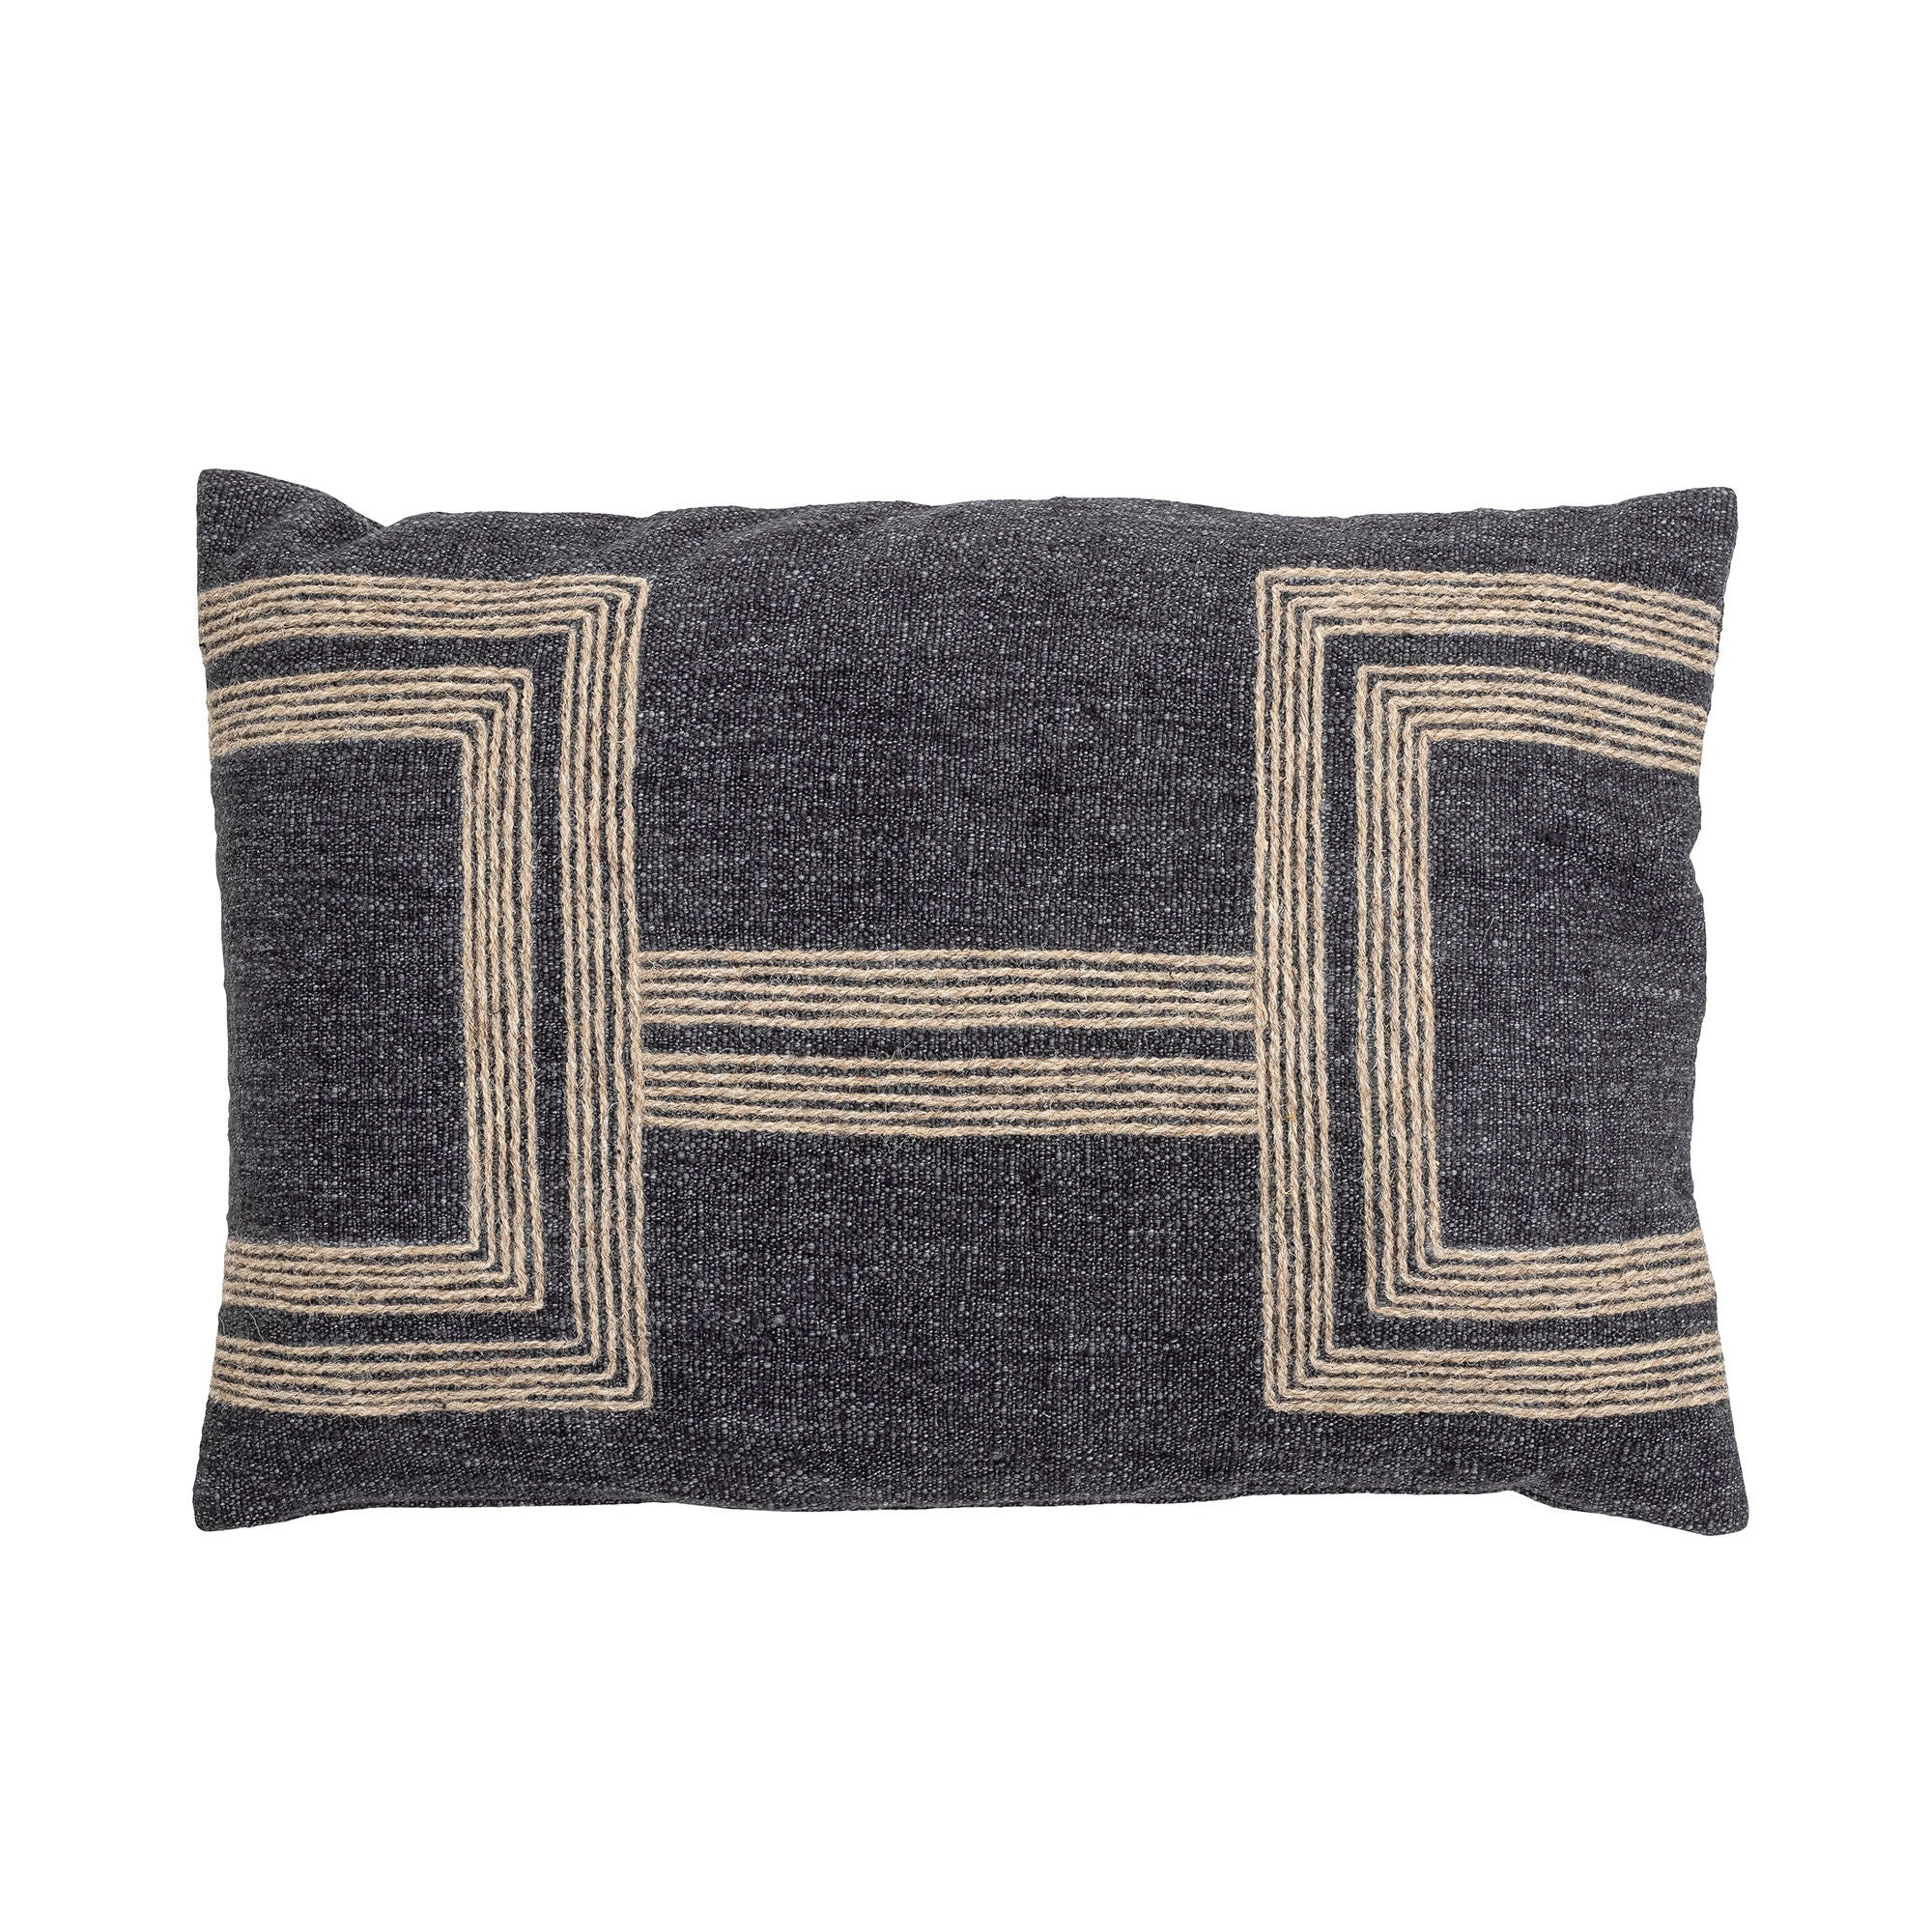 Das Aniol Kissen von Creative Collection, aus grauer Baumwolle gefertigt, besticht durch seine schönen Stickereien und verleiht Ihrem Sofa oder Lounge-Sessel eine elegante Note.